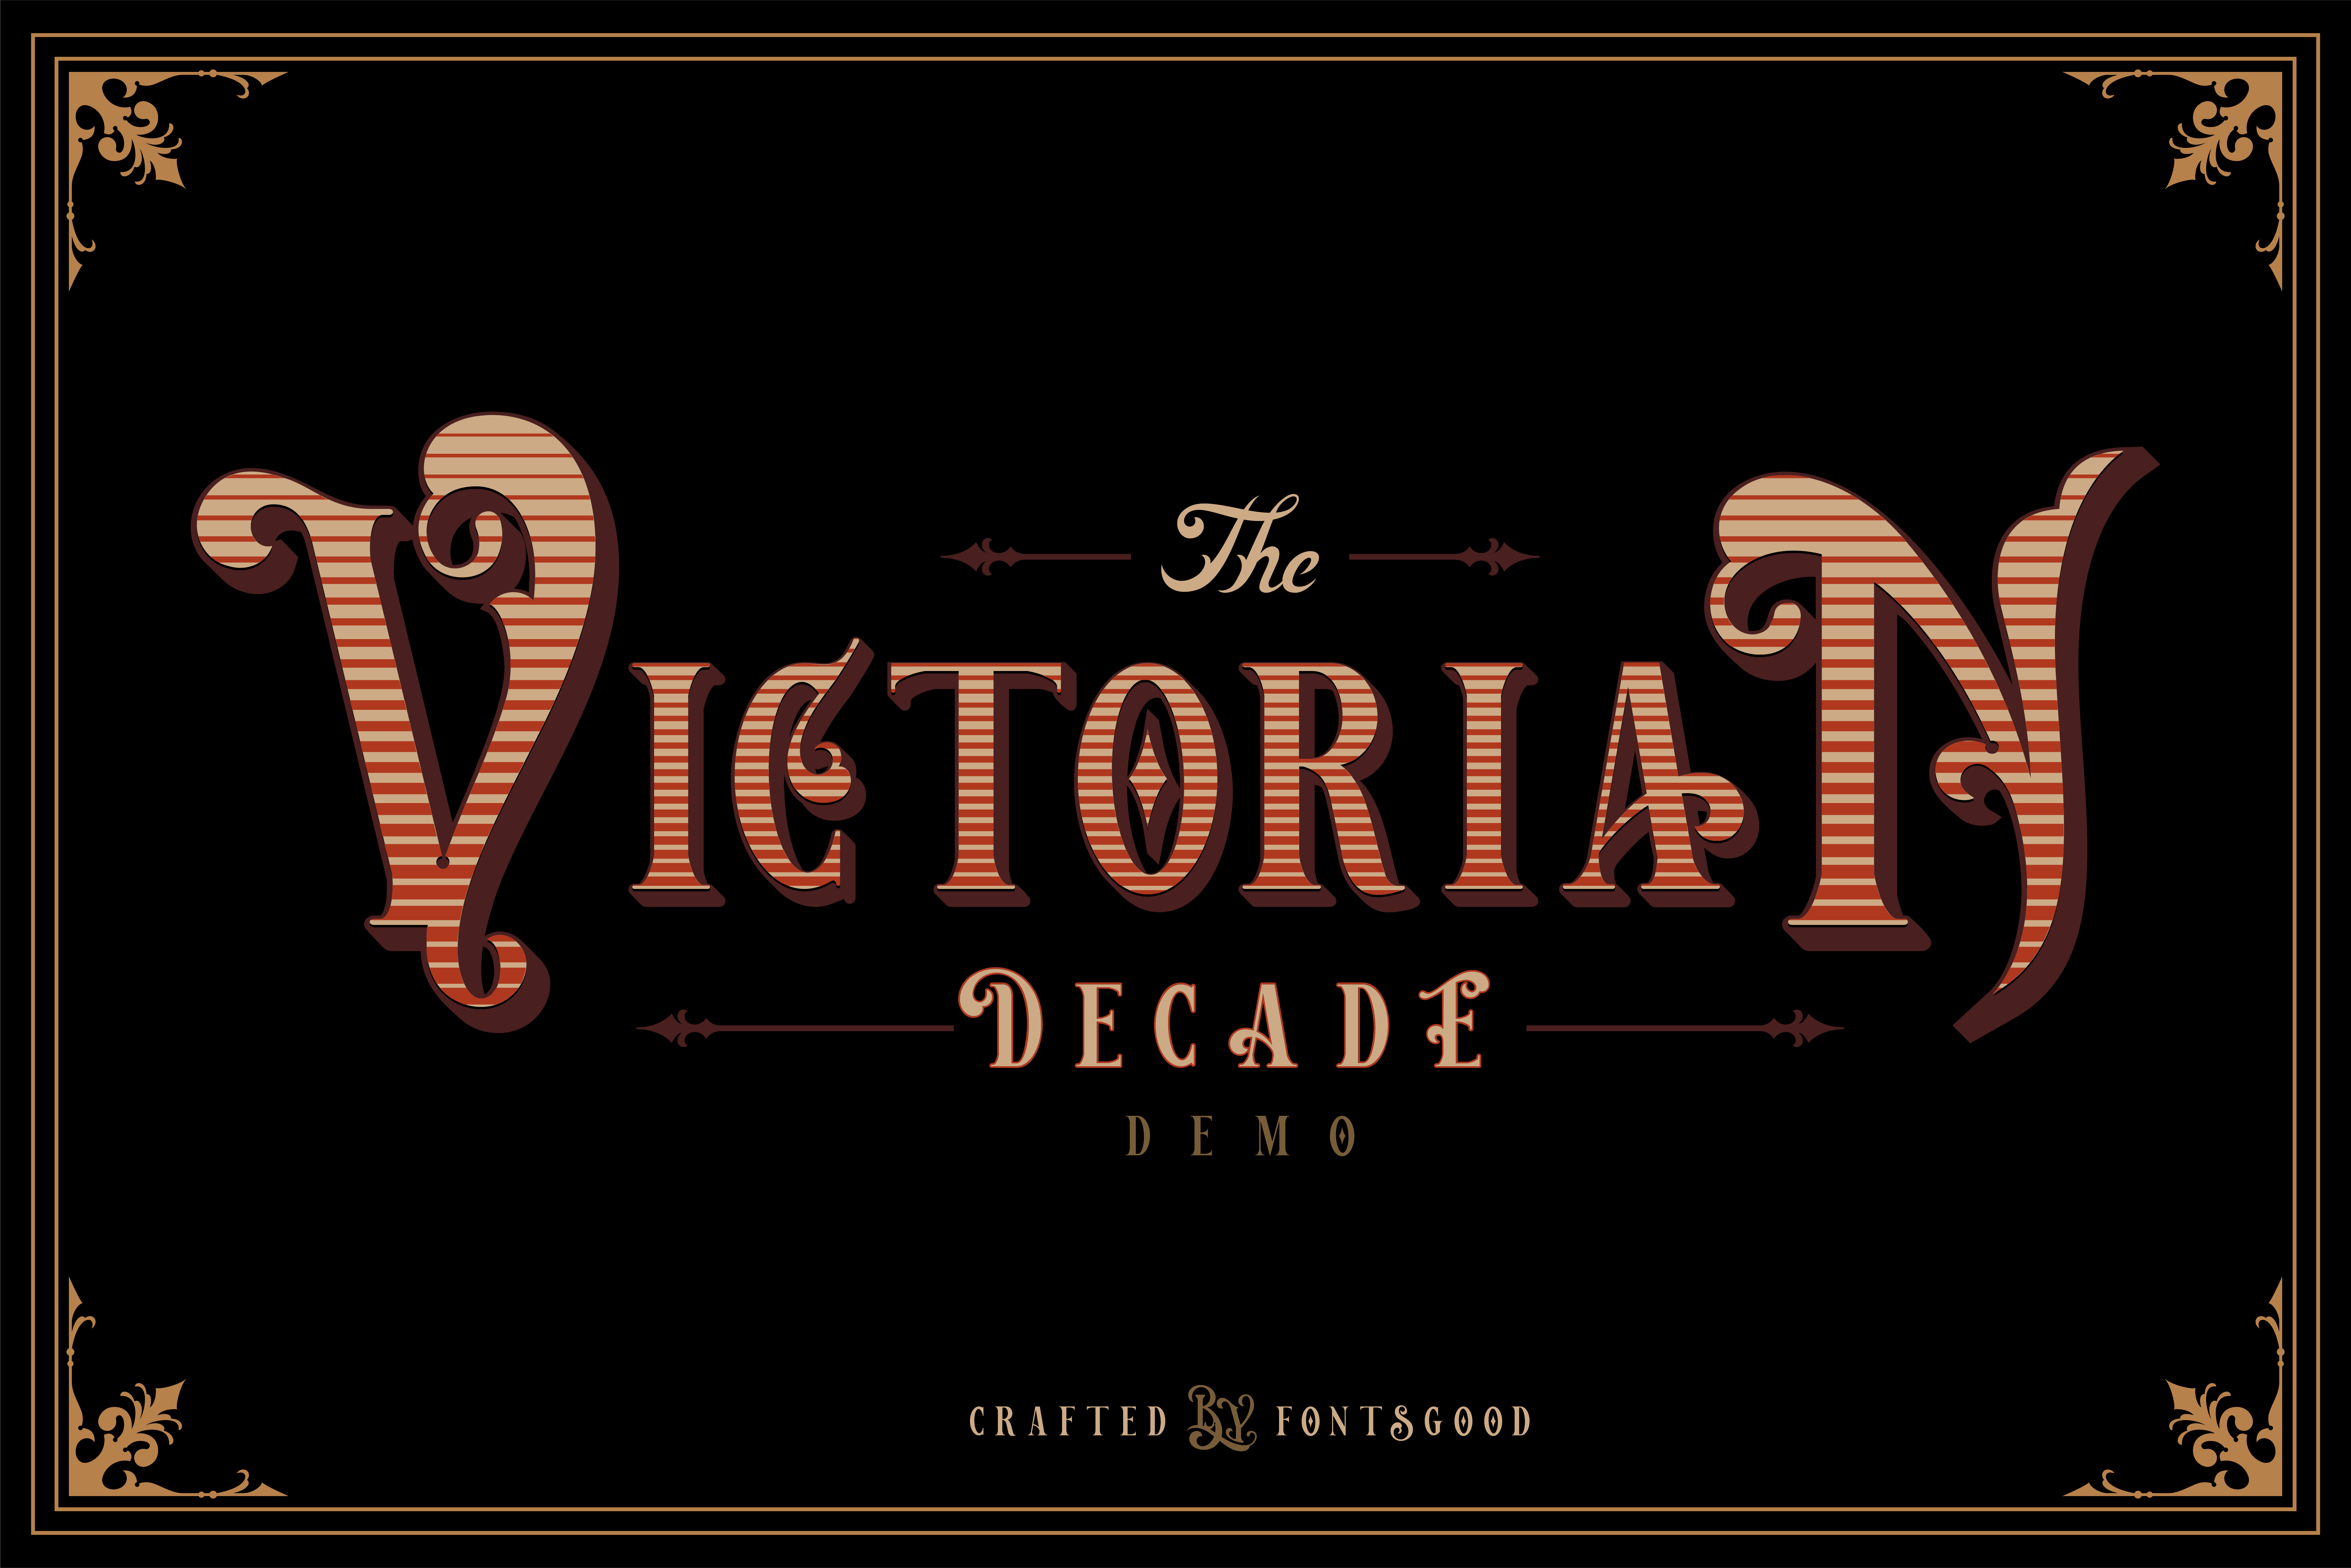 Victorian Decade Version